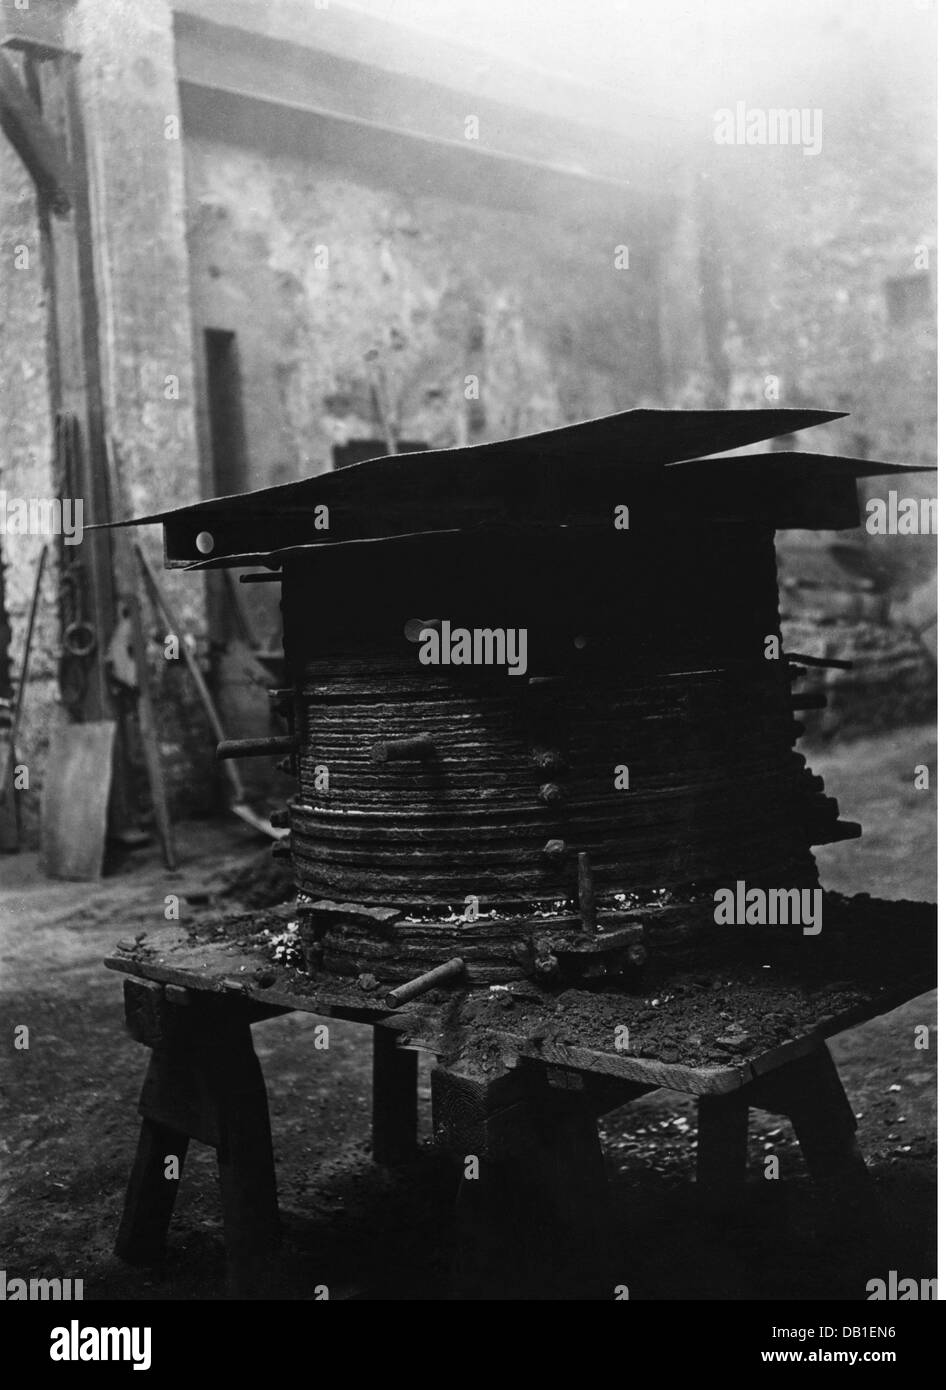 Artisanat, fondateur de cloche, gaine métallique de la moule de coulée, fonderie de cloche Joseph Pfundner, Vienne, années 1930, droits additionnels-Clearences-non disponible Banque D'Images